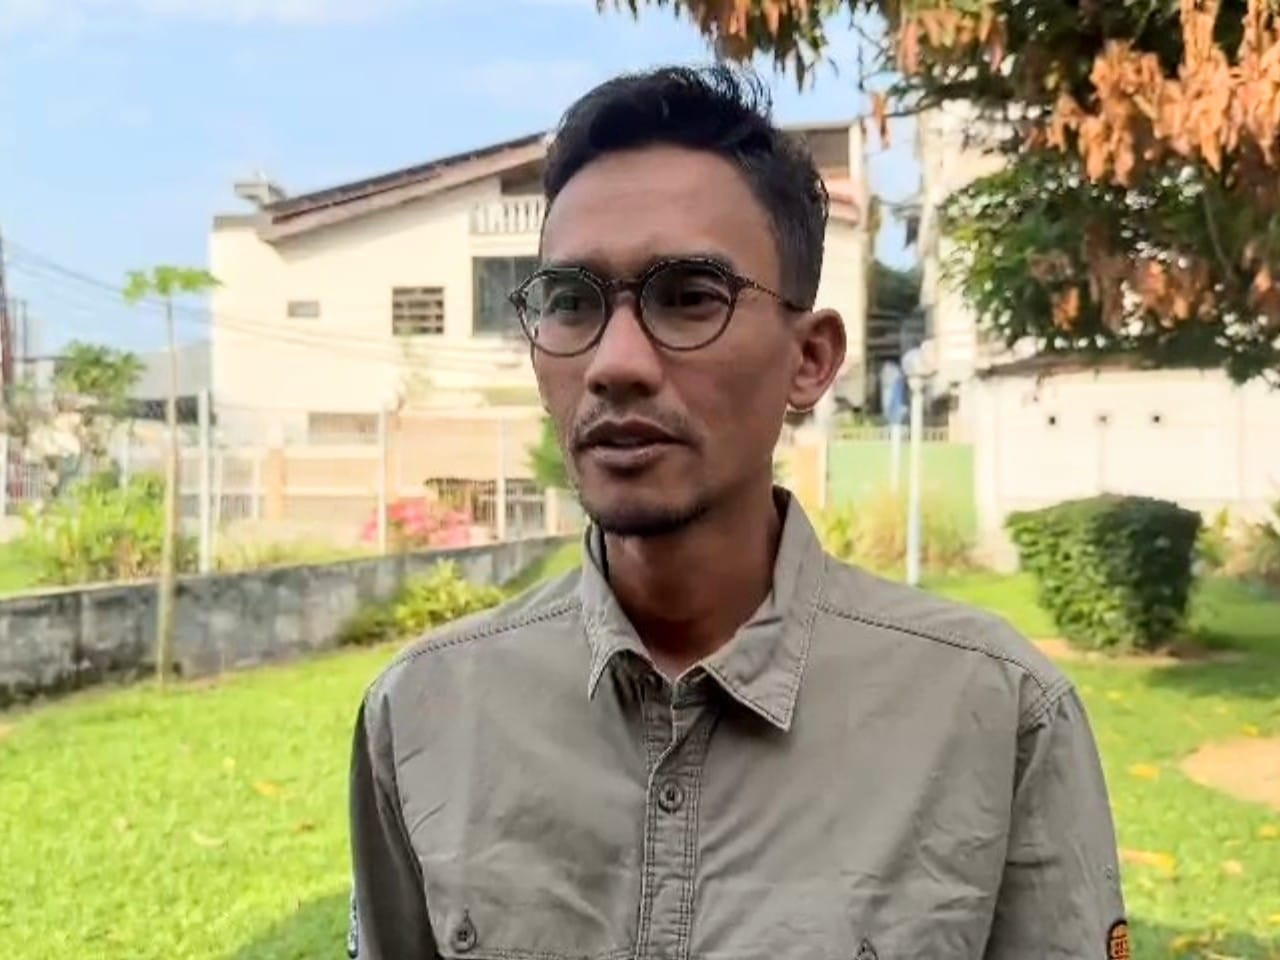 Pertamina Sanksi SPBU yang Salah Isi BBM ke Puluhan Kendaraan di Sumut: Sebulan Tak Dapat Pasokan Pertalite - JPNN.com Sumut